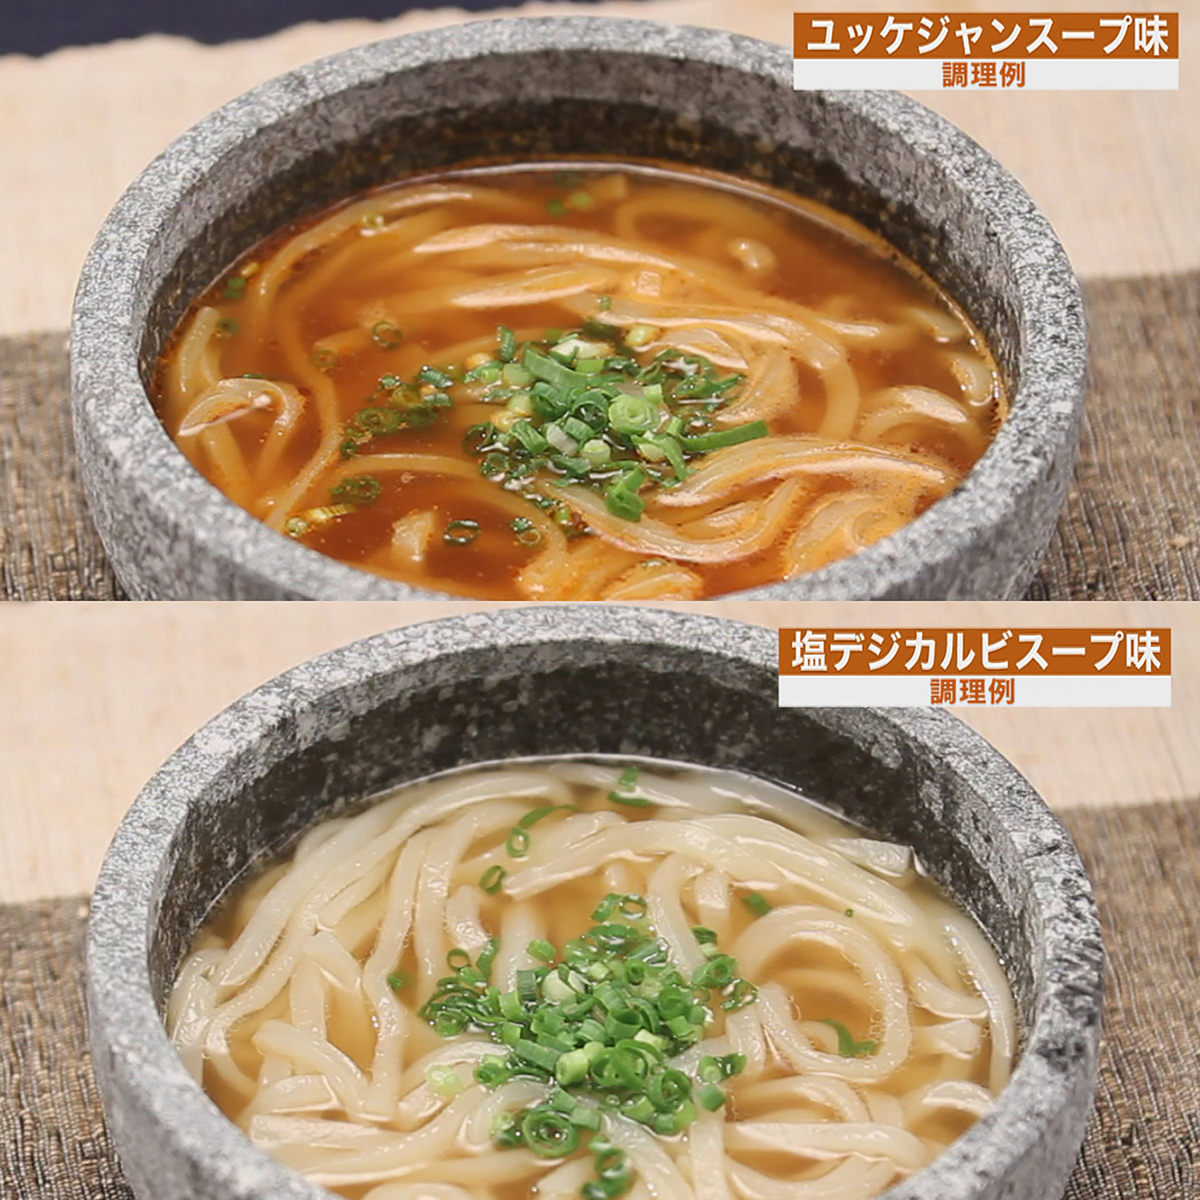 ＜QVCジャパン＞ 韓国風うどん12食セット画像